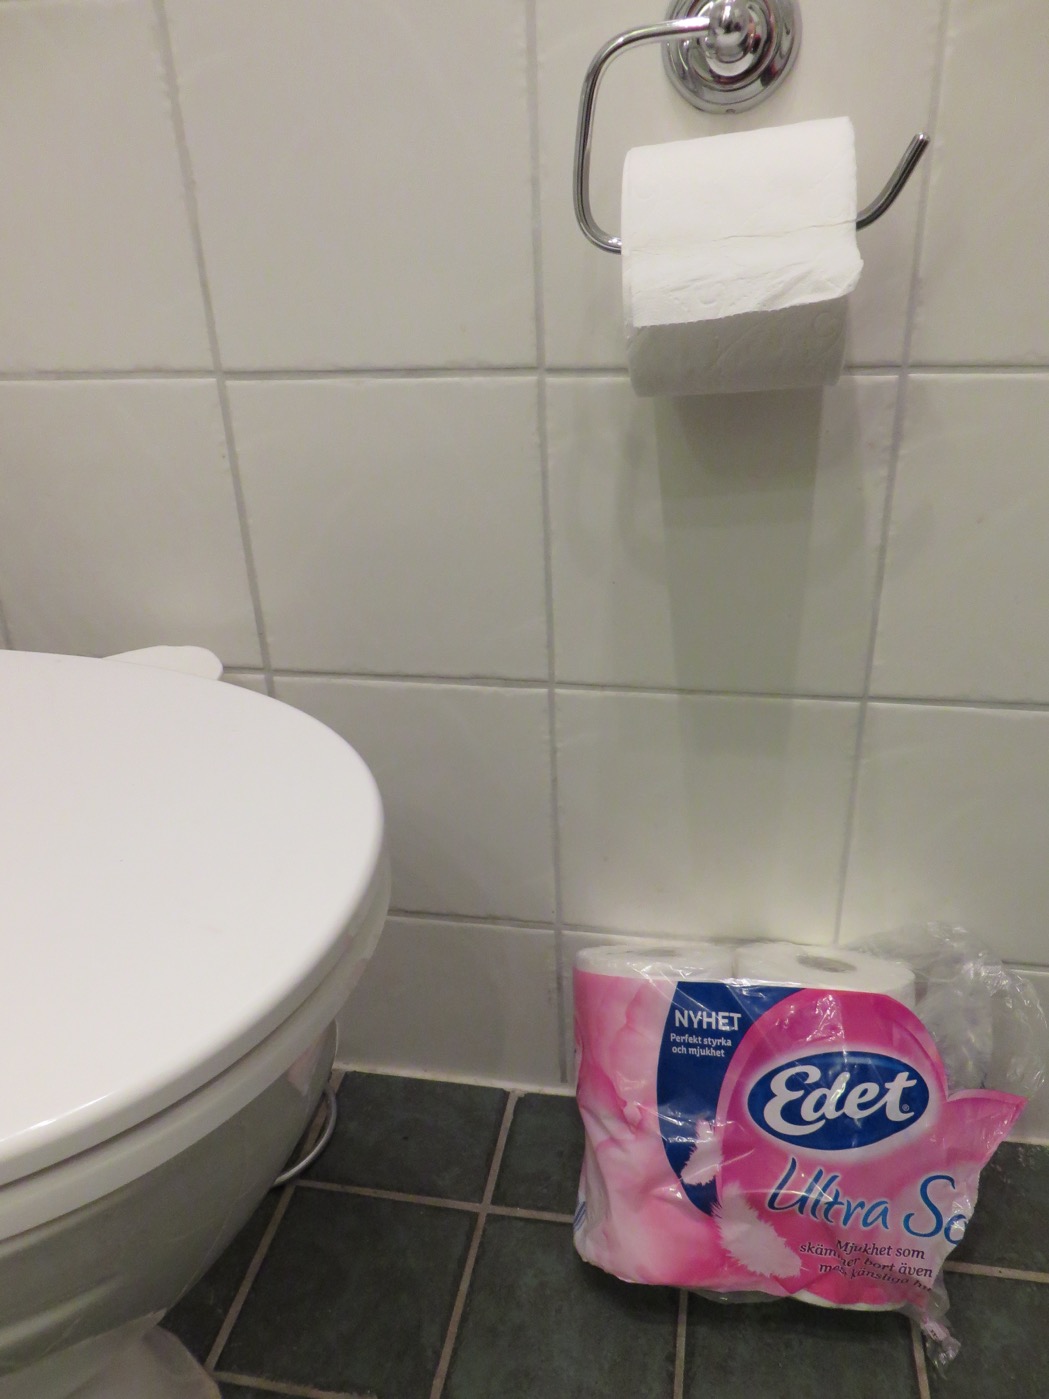 Test av Edet toalettpapper. 